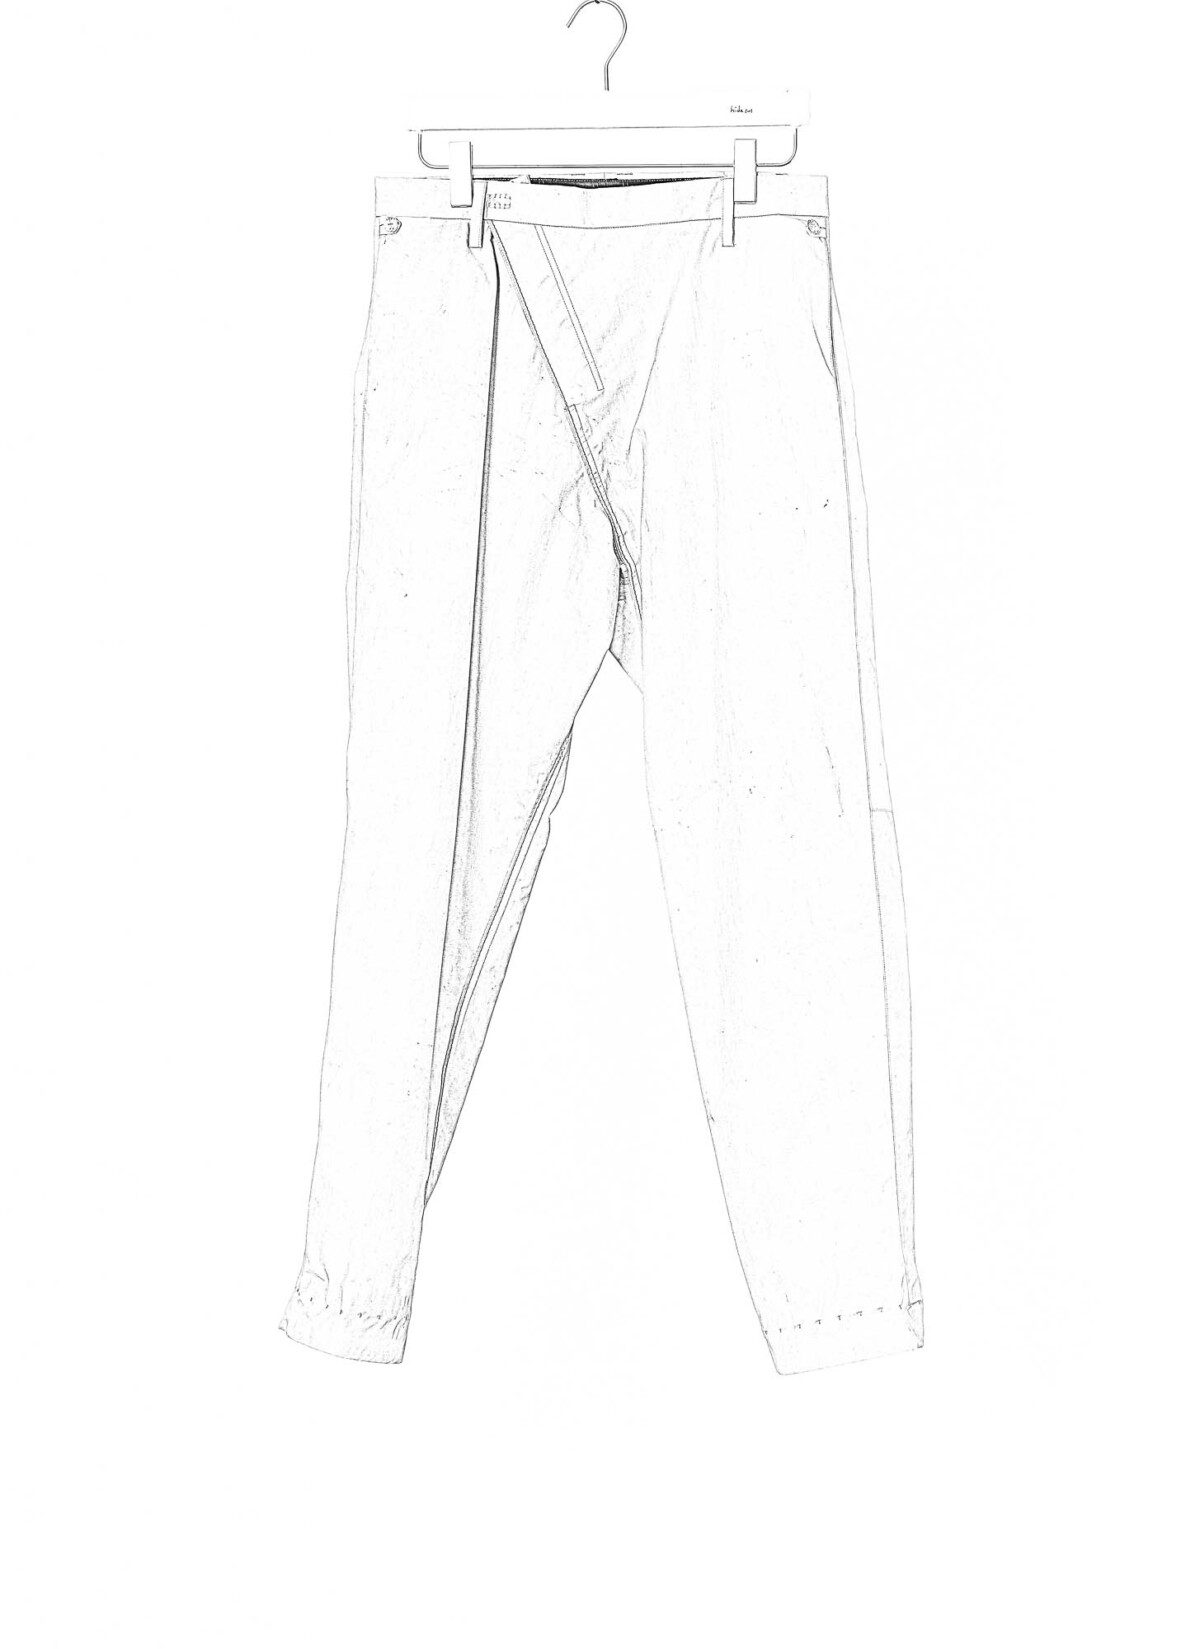 TAICHI MURAKAMI L-P L/C Pants Origami, dusty white, 3 layer nylon waterproof